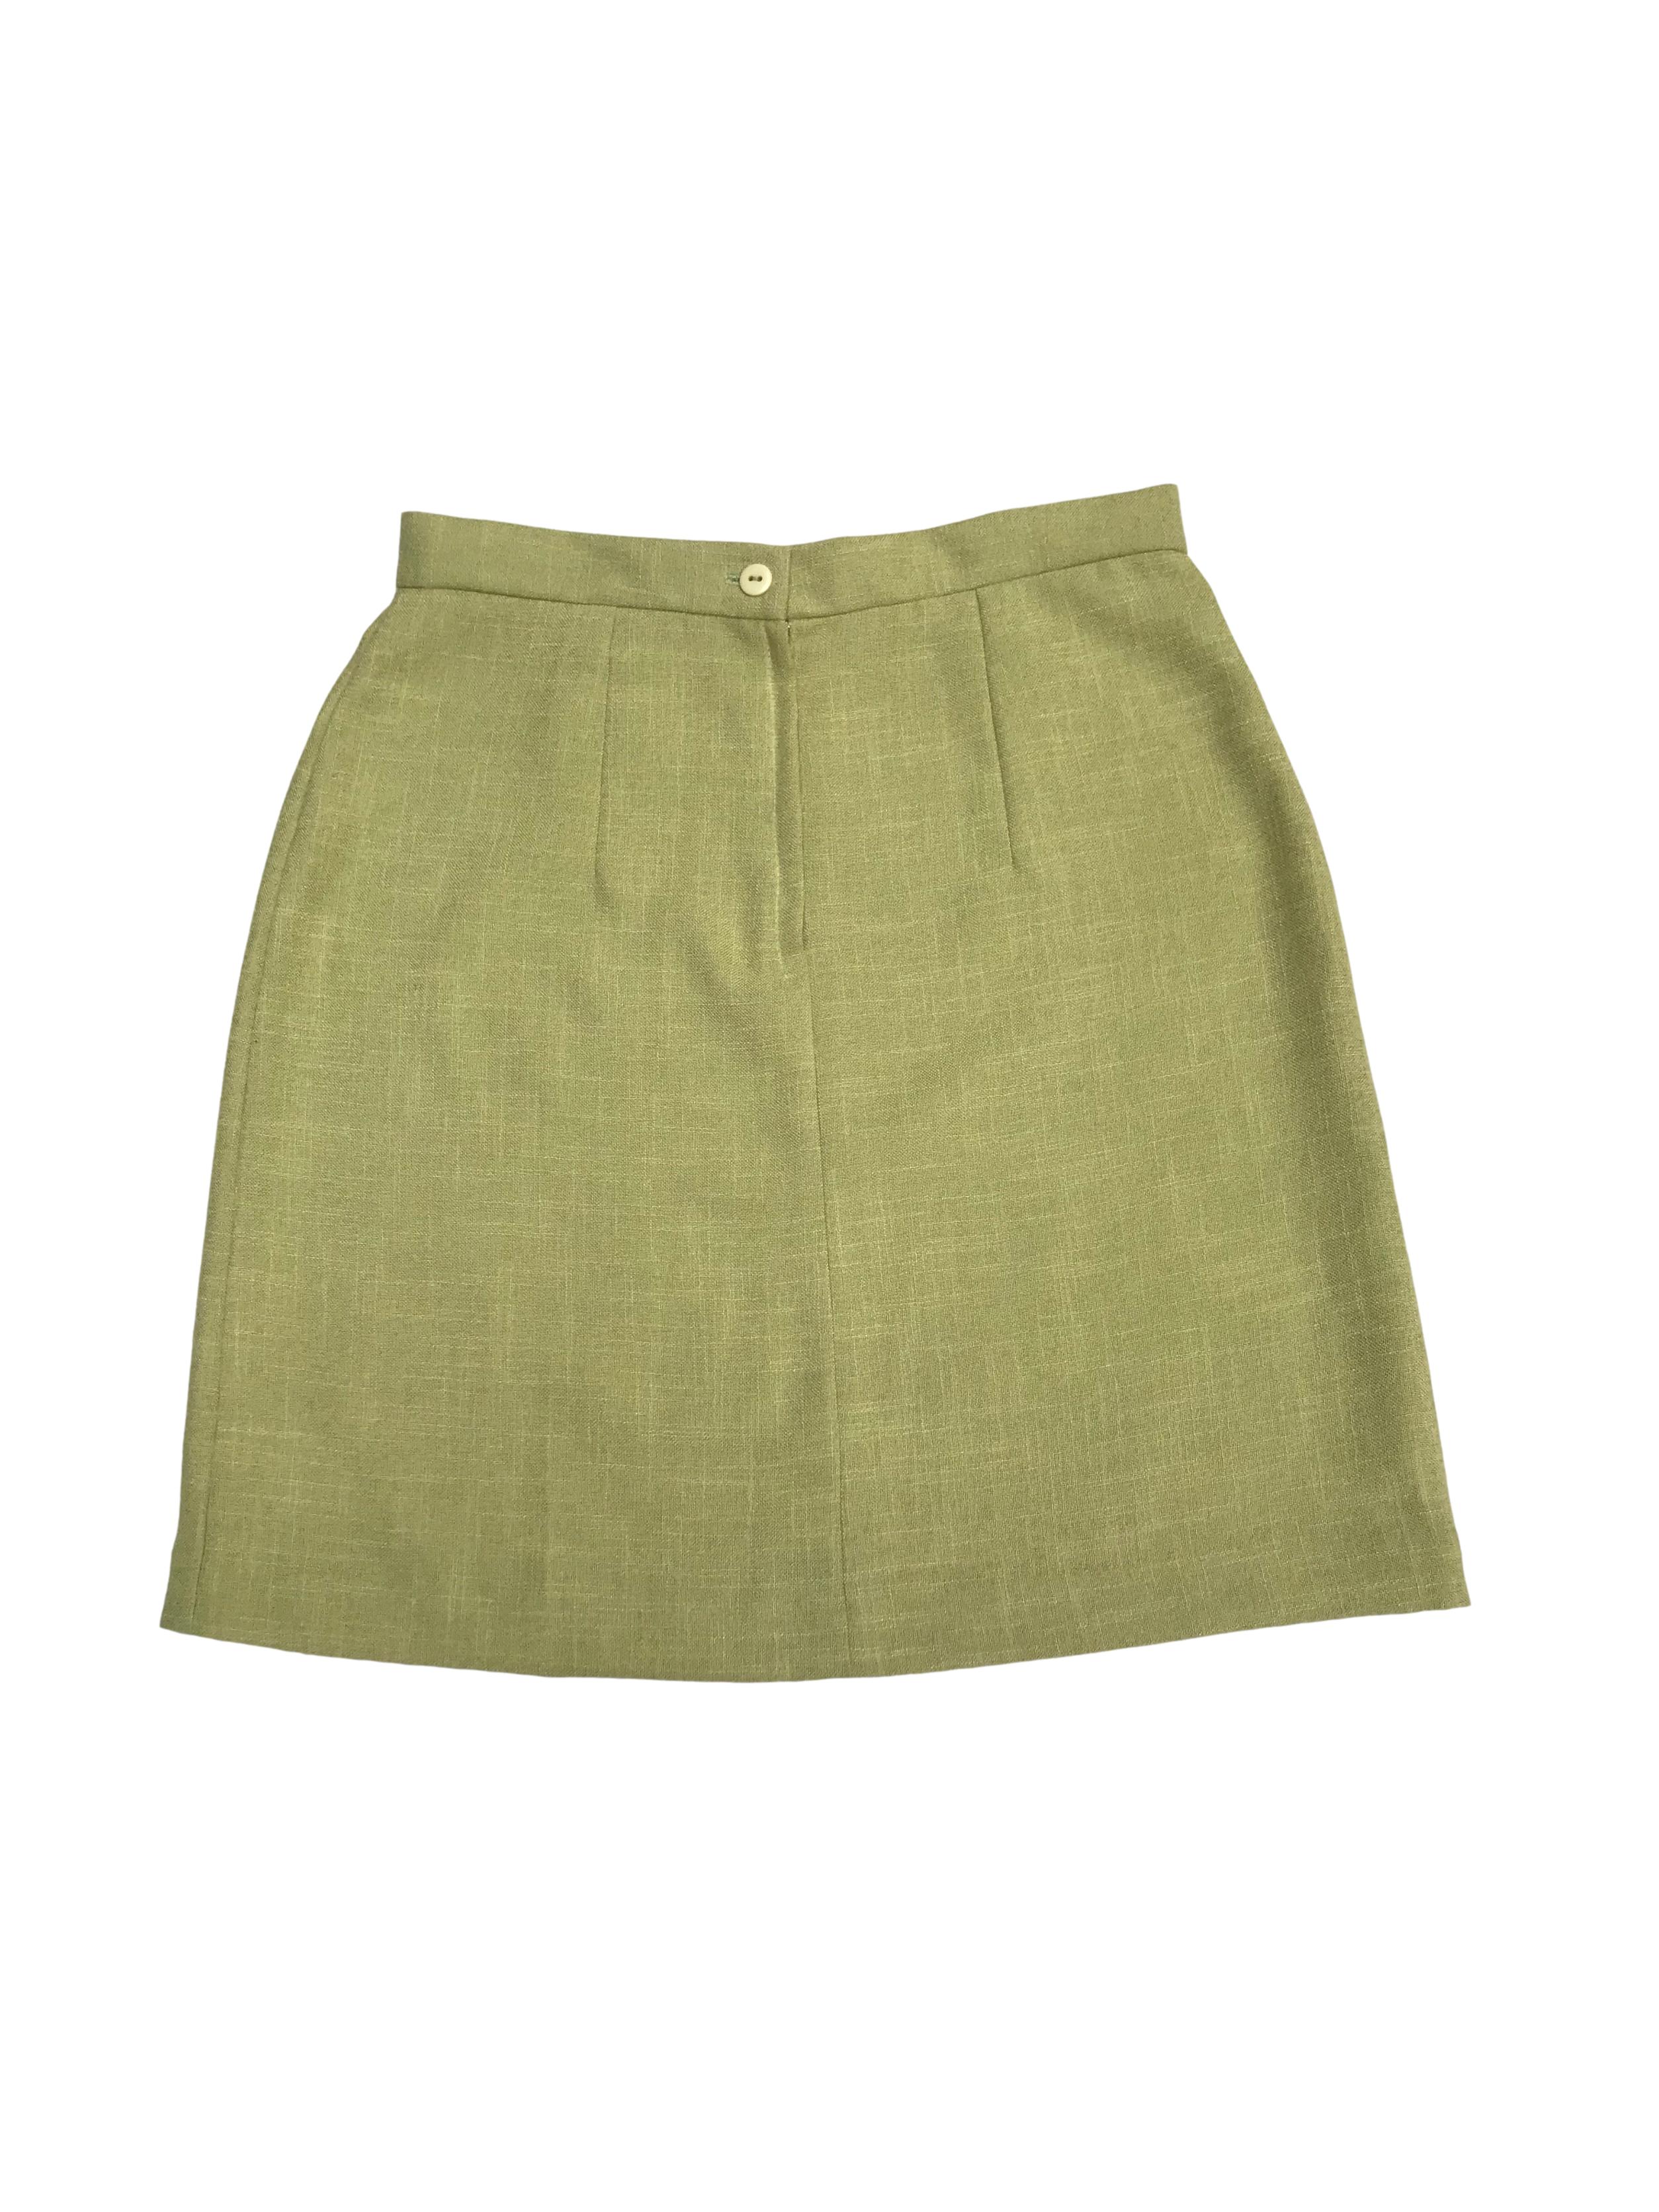 Falda de lino verde con cierre y botónposterior. Color hermoso. Cintura 68cm Cadera 92cm Largo 46cm